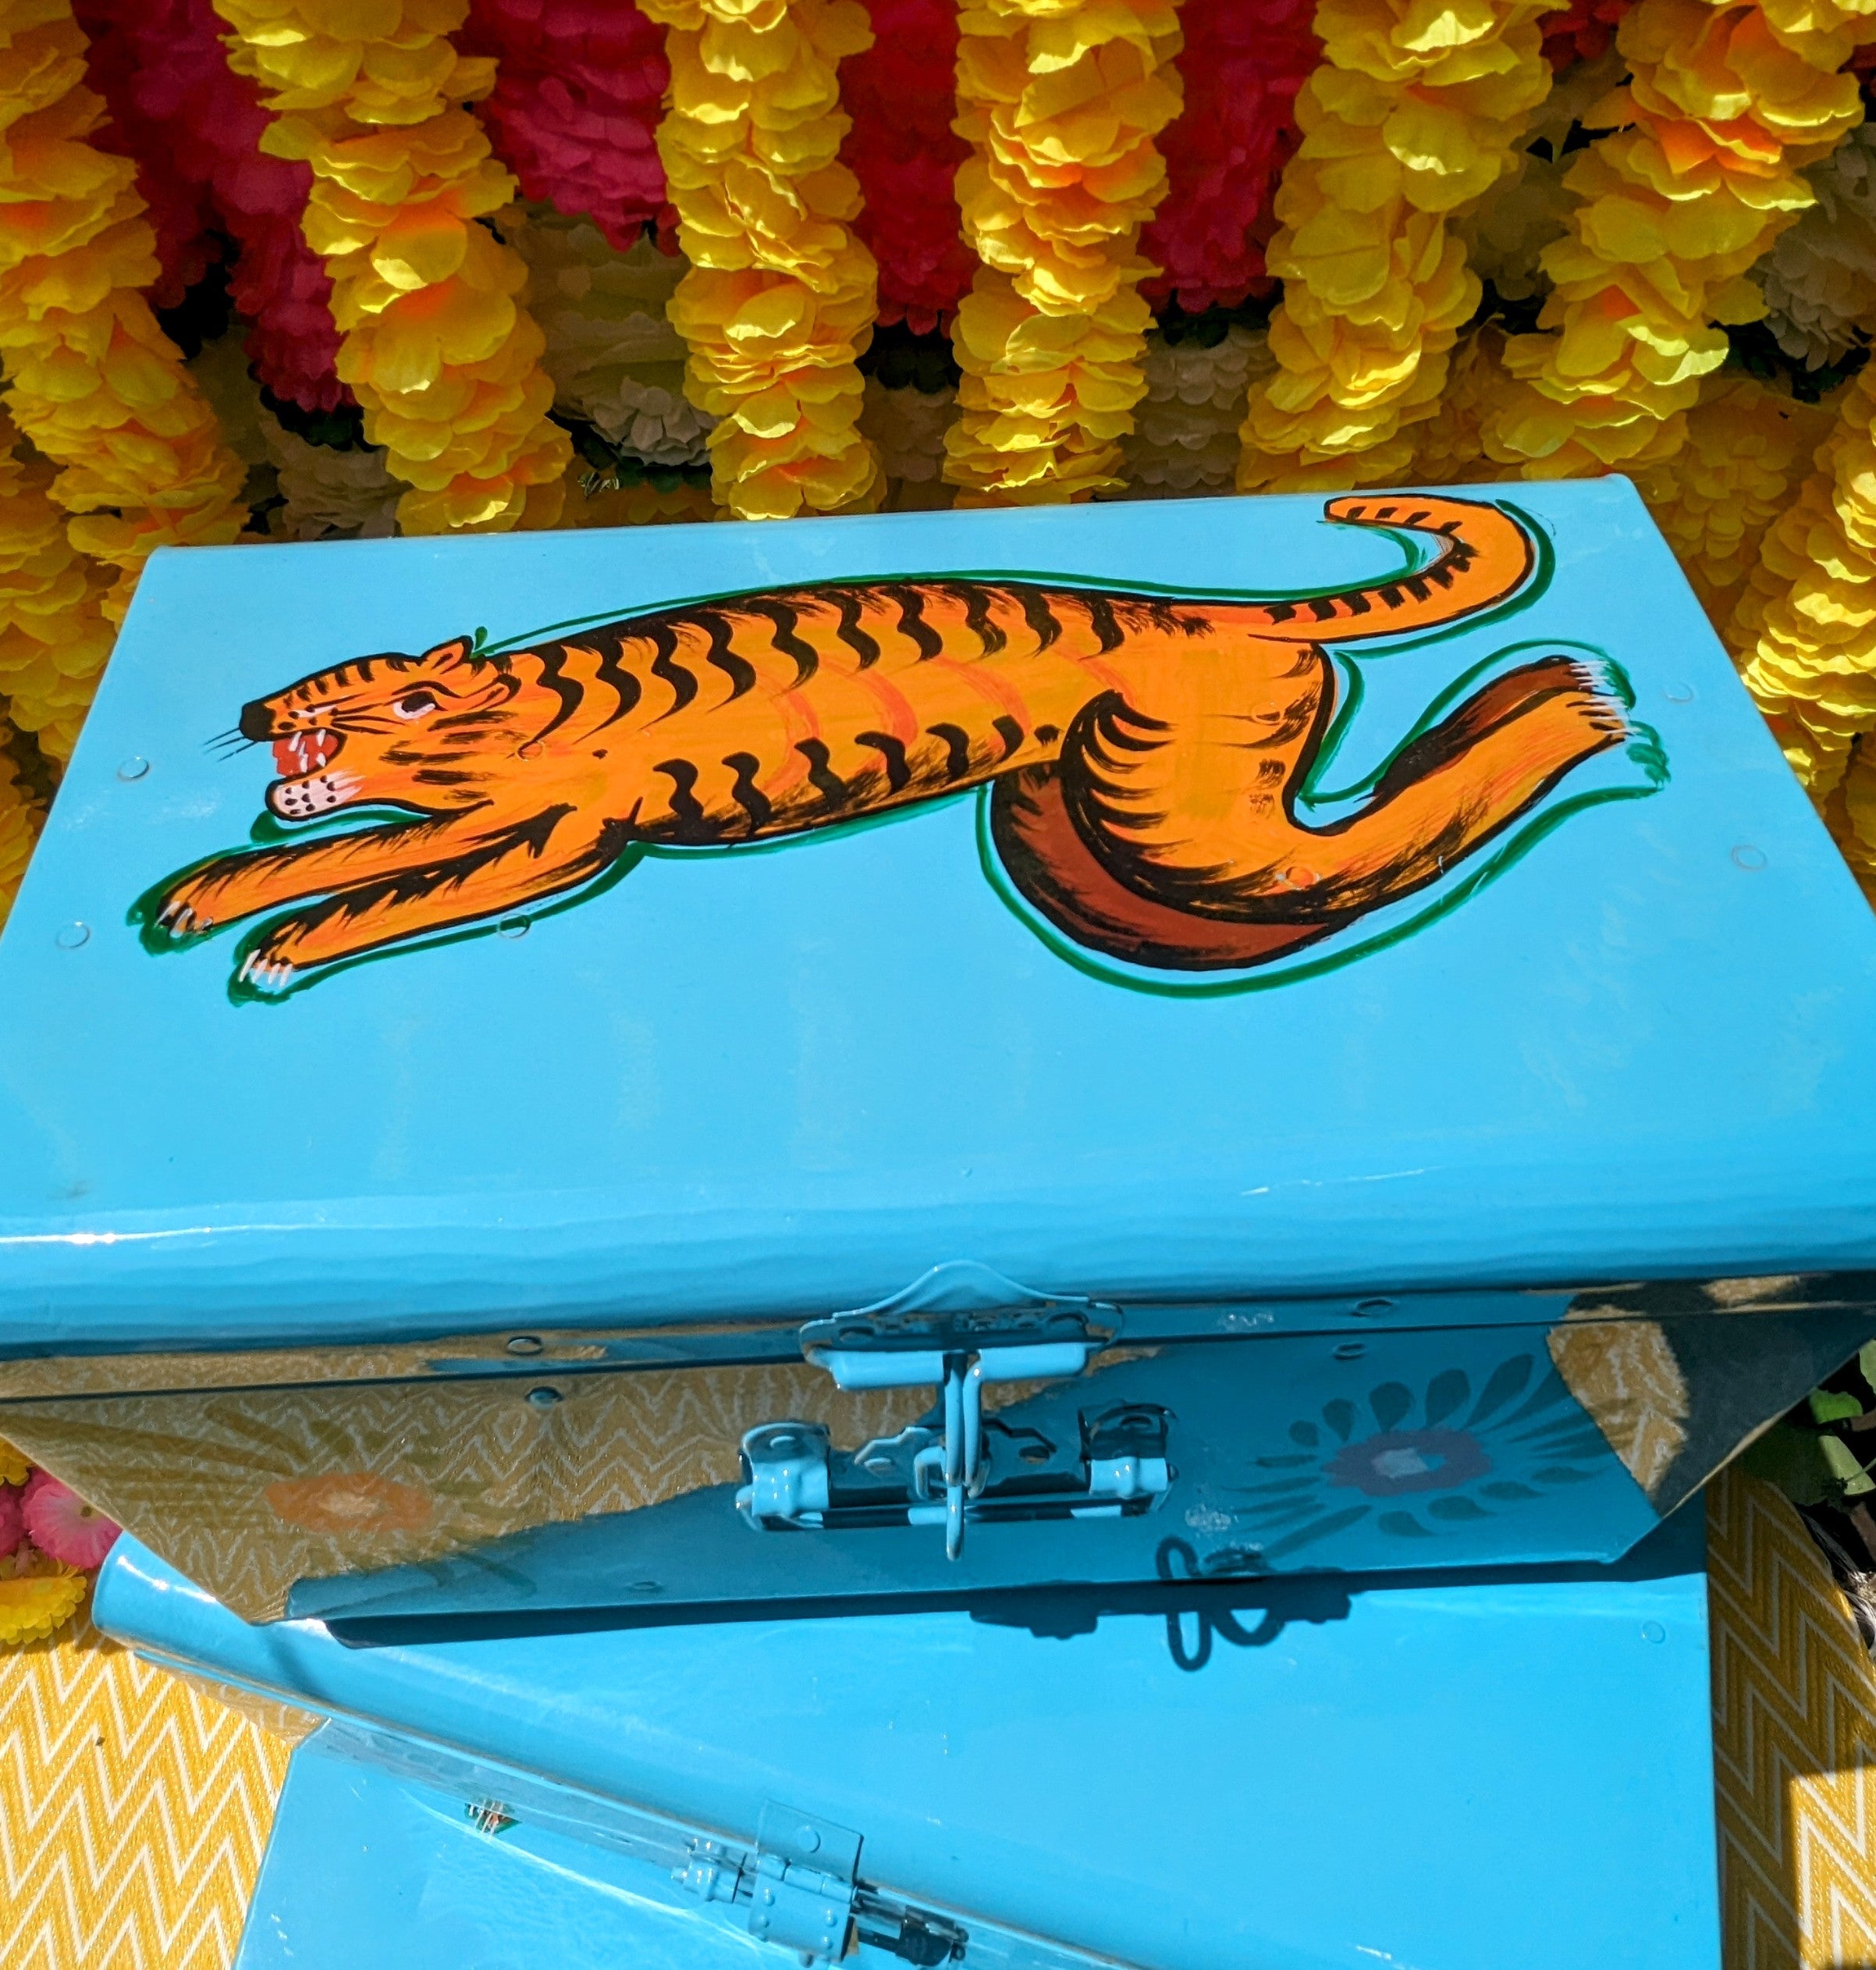 Indian truck art trunks - Tiger